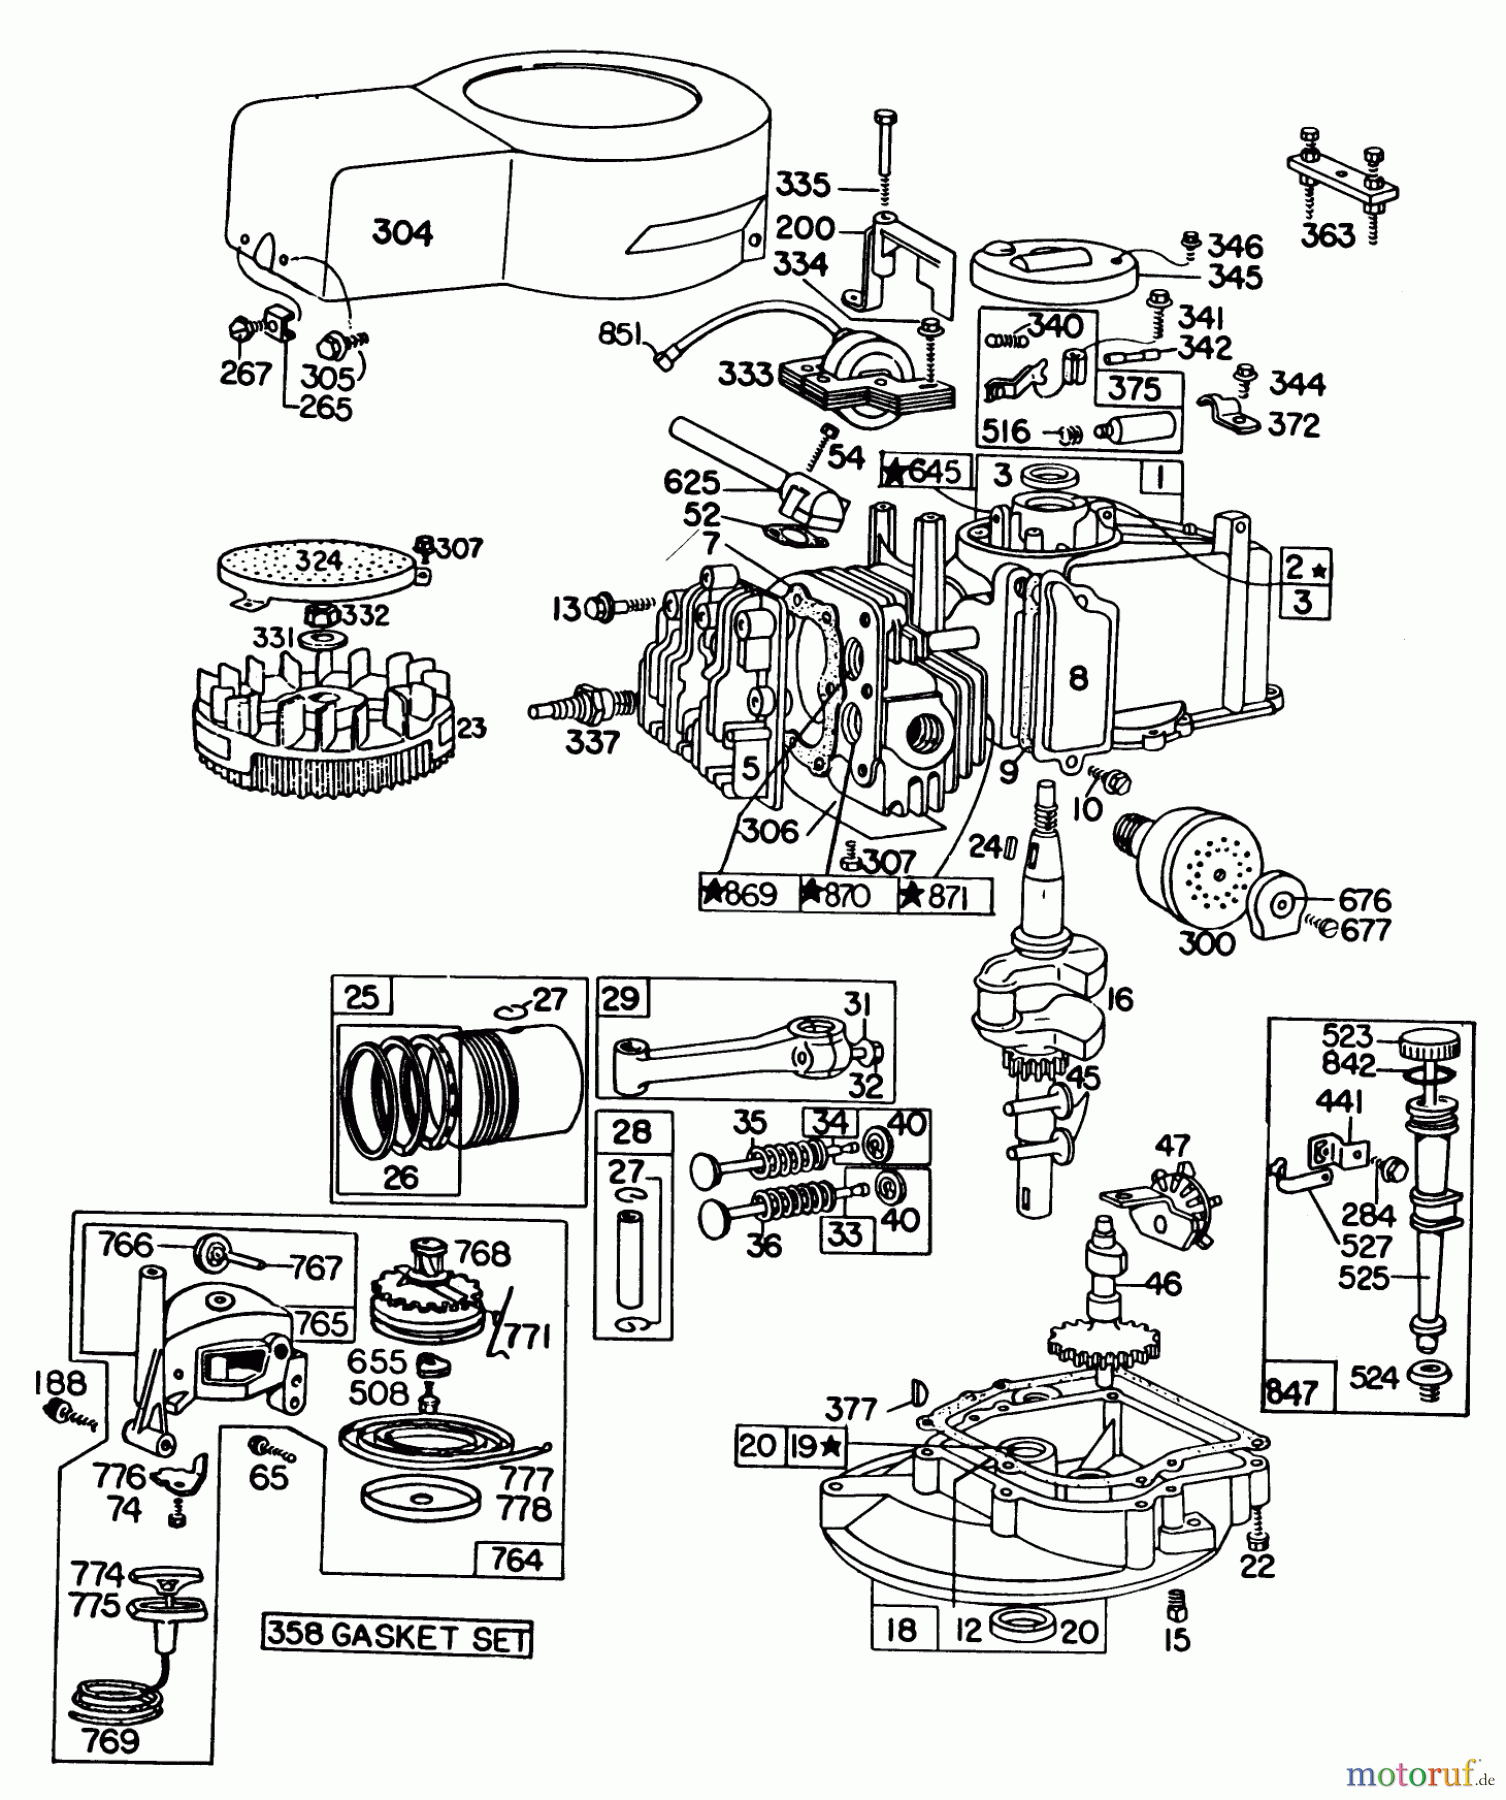  Toro Neu Mowers, Walk-Behind Seite 1 16390 - Toro Whirlwind PowR, 1979 (9000001-9999999) ENGINE BRIGGS & STRATTON MODEL 92908-1931-04 FOR 21